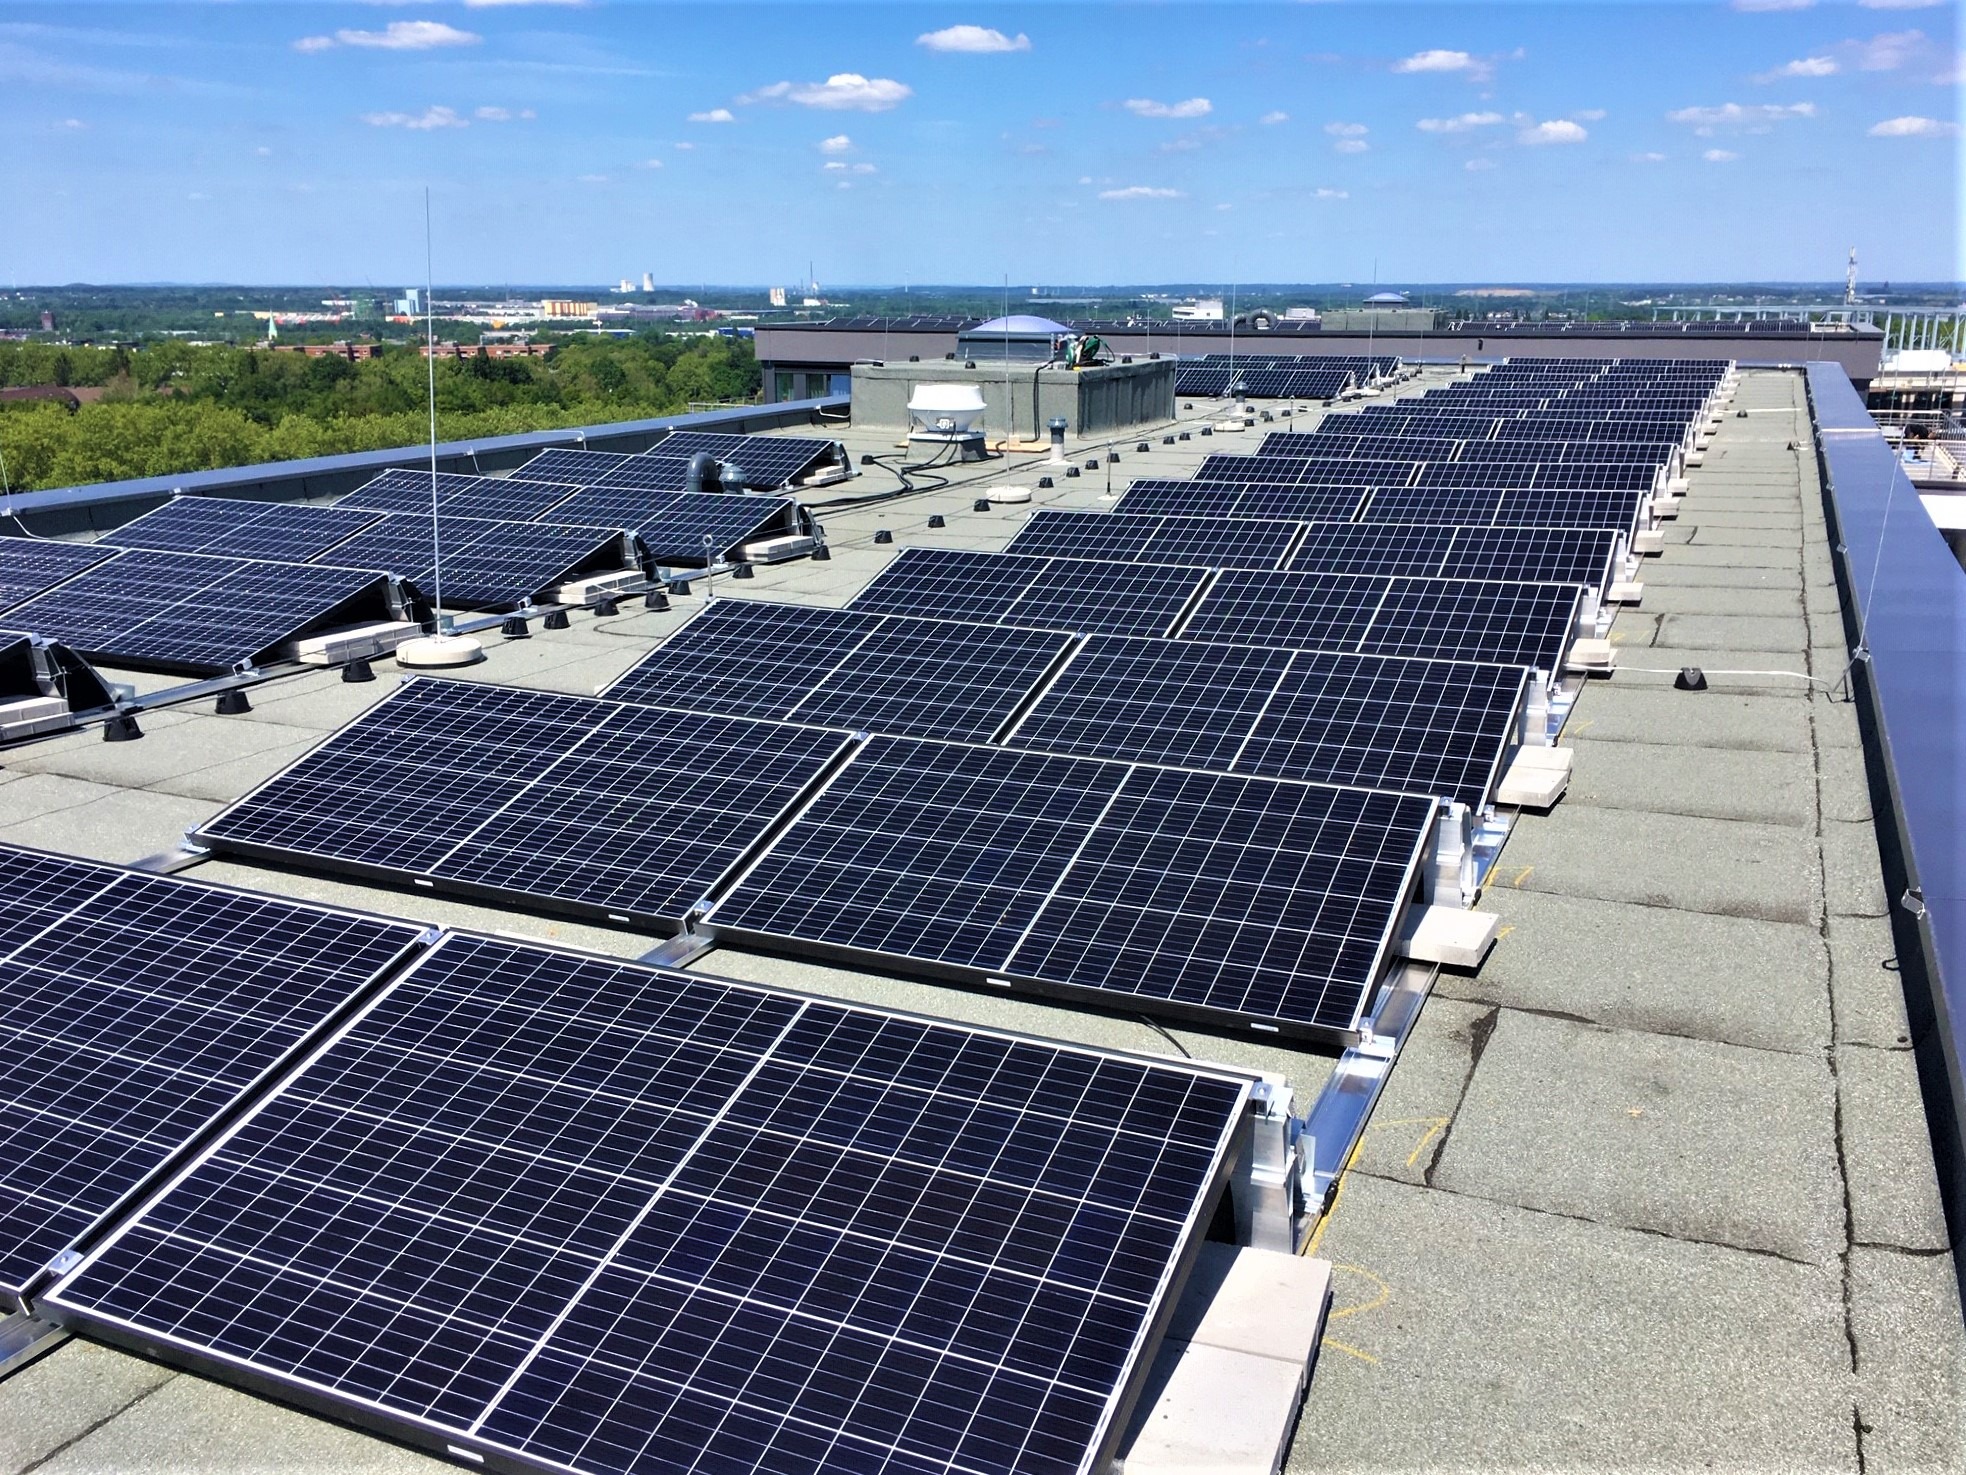 Juni 2020 - Photovoltaikanlagen wurden installiert